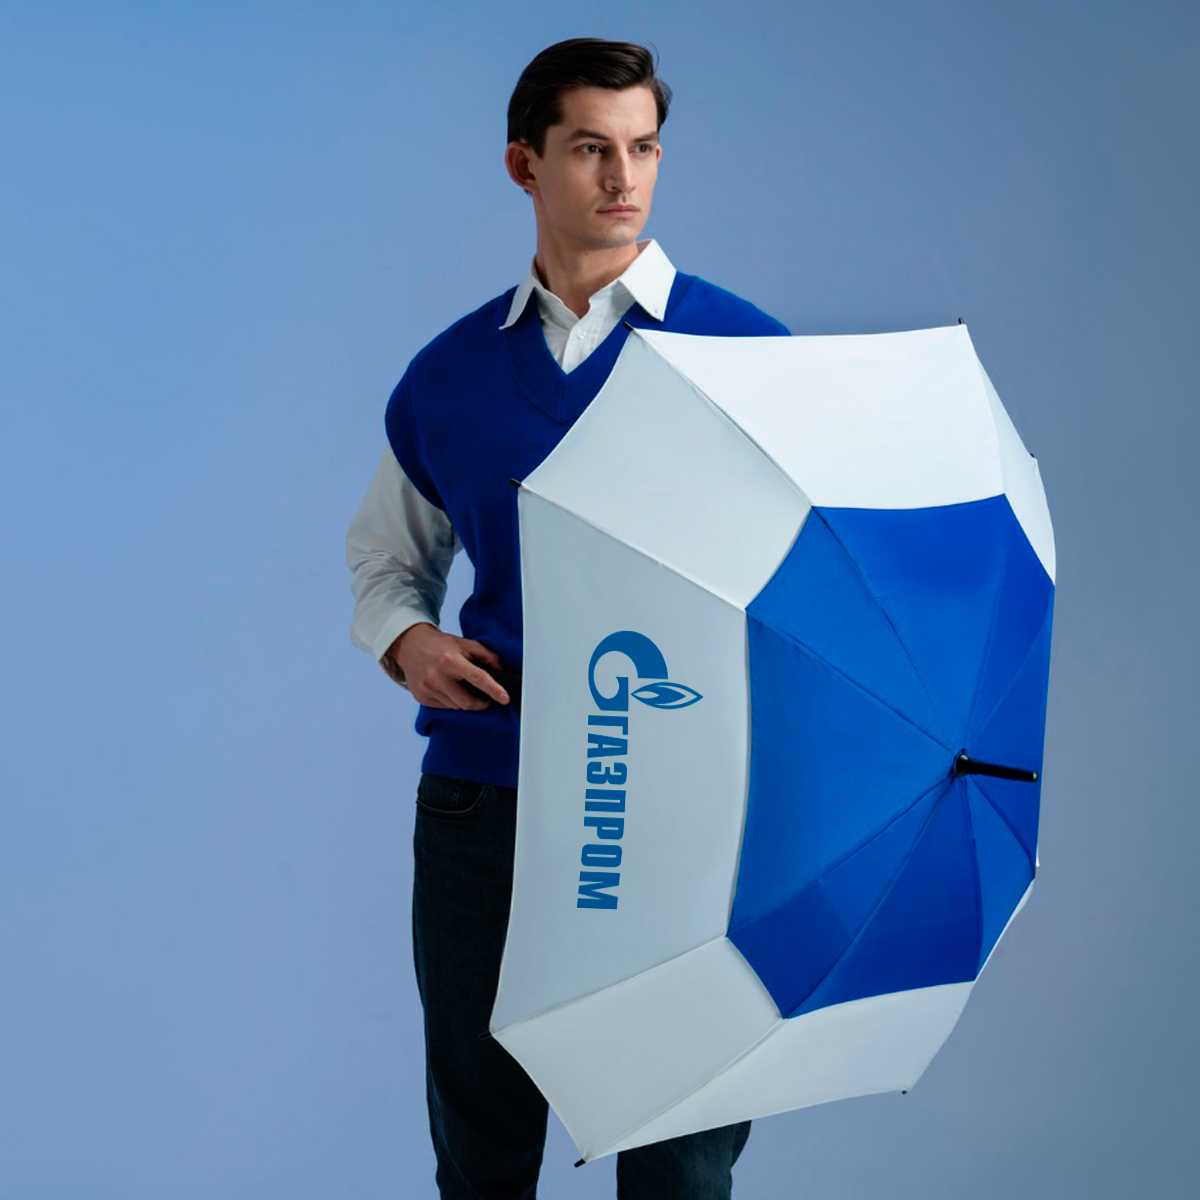 зонты с логотипом